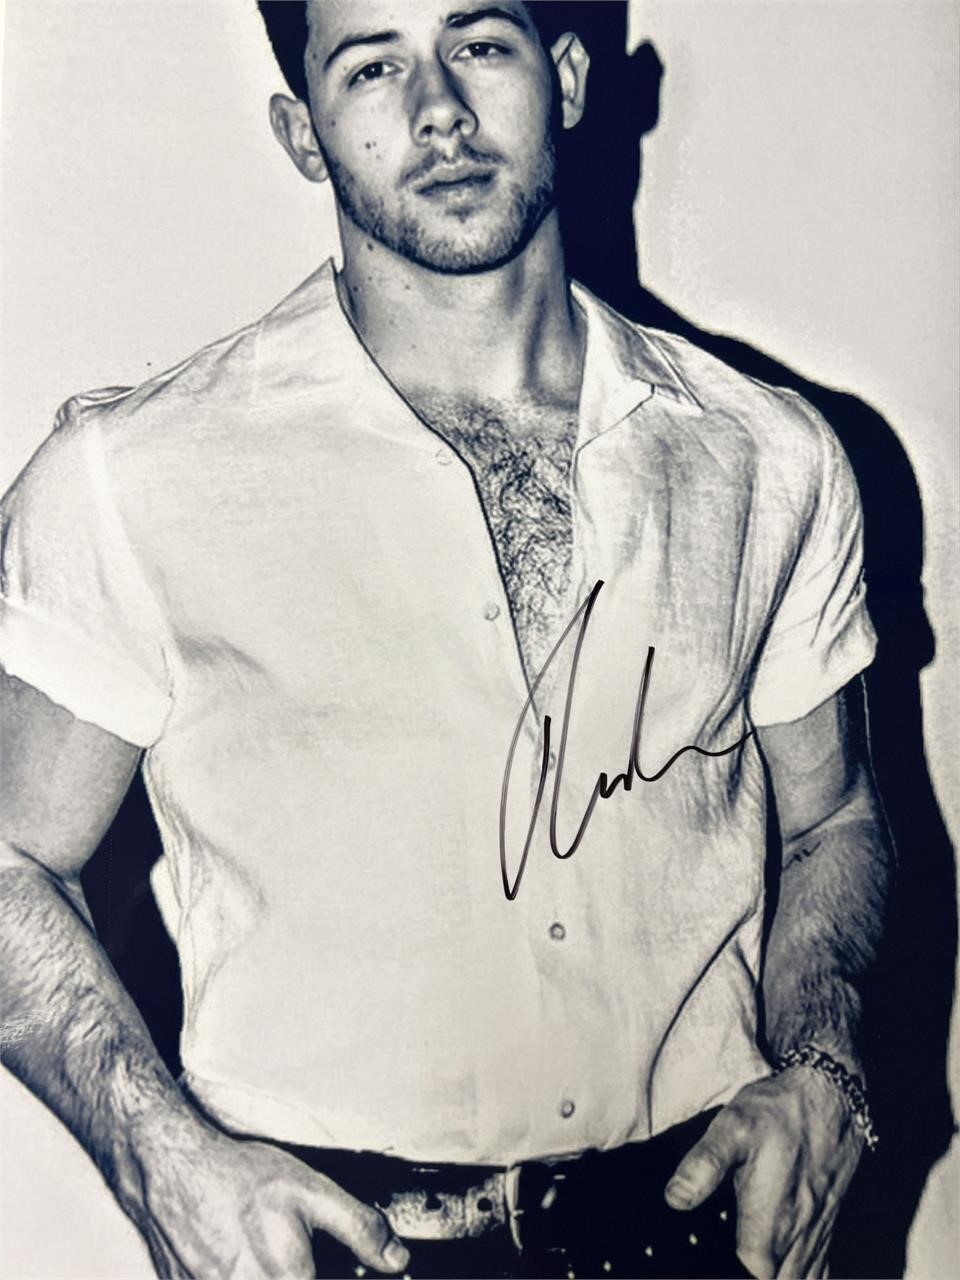 Nick Jonas signed photo